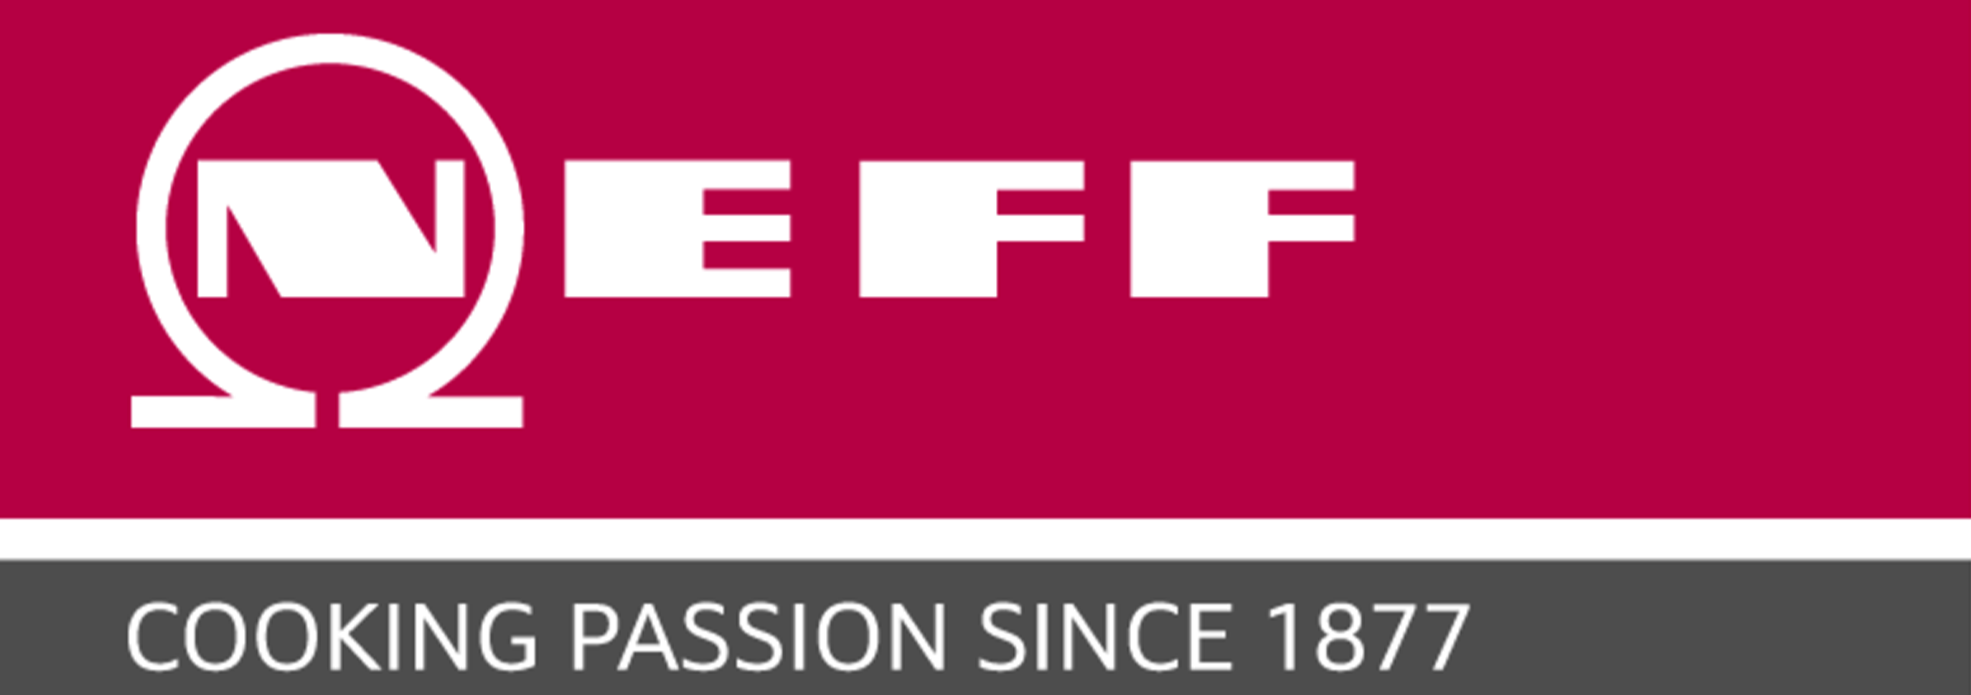 NEFF-logo